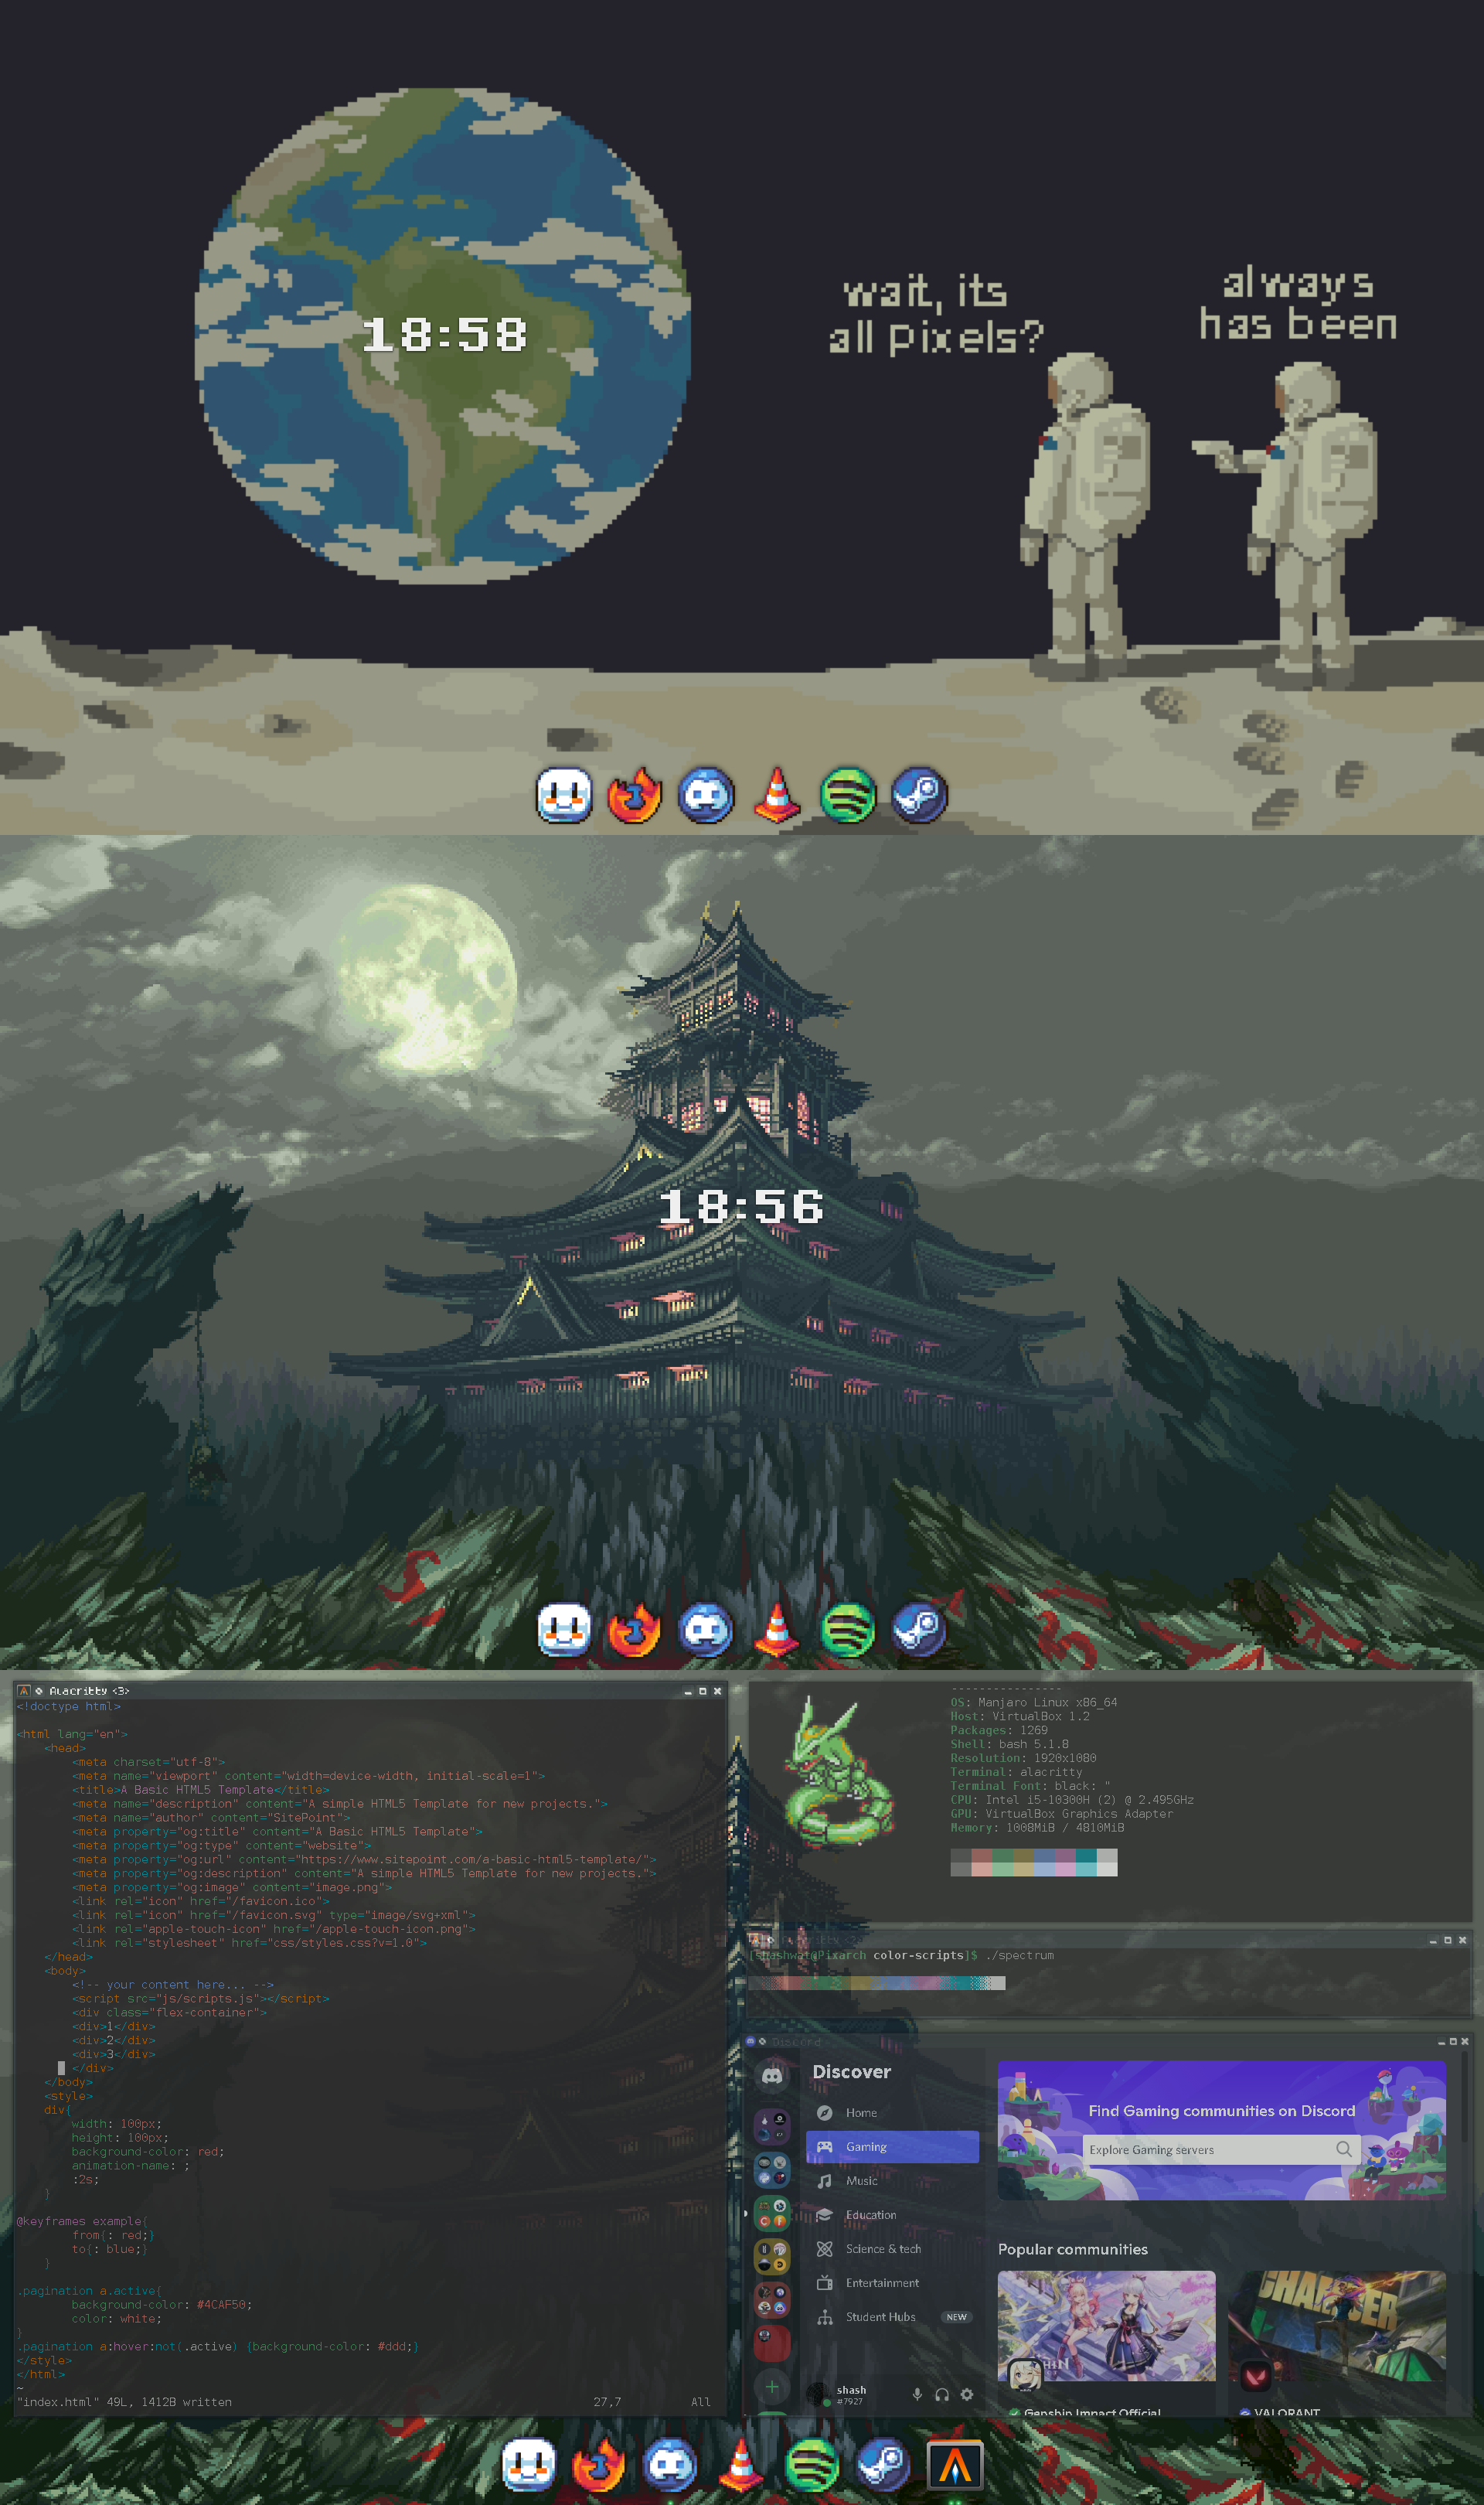 Imagem (captura de tela) de uma customização qualquer de desktop GNU/Linux.